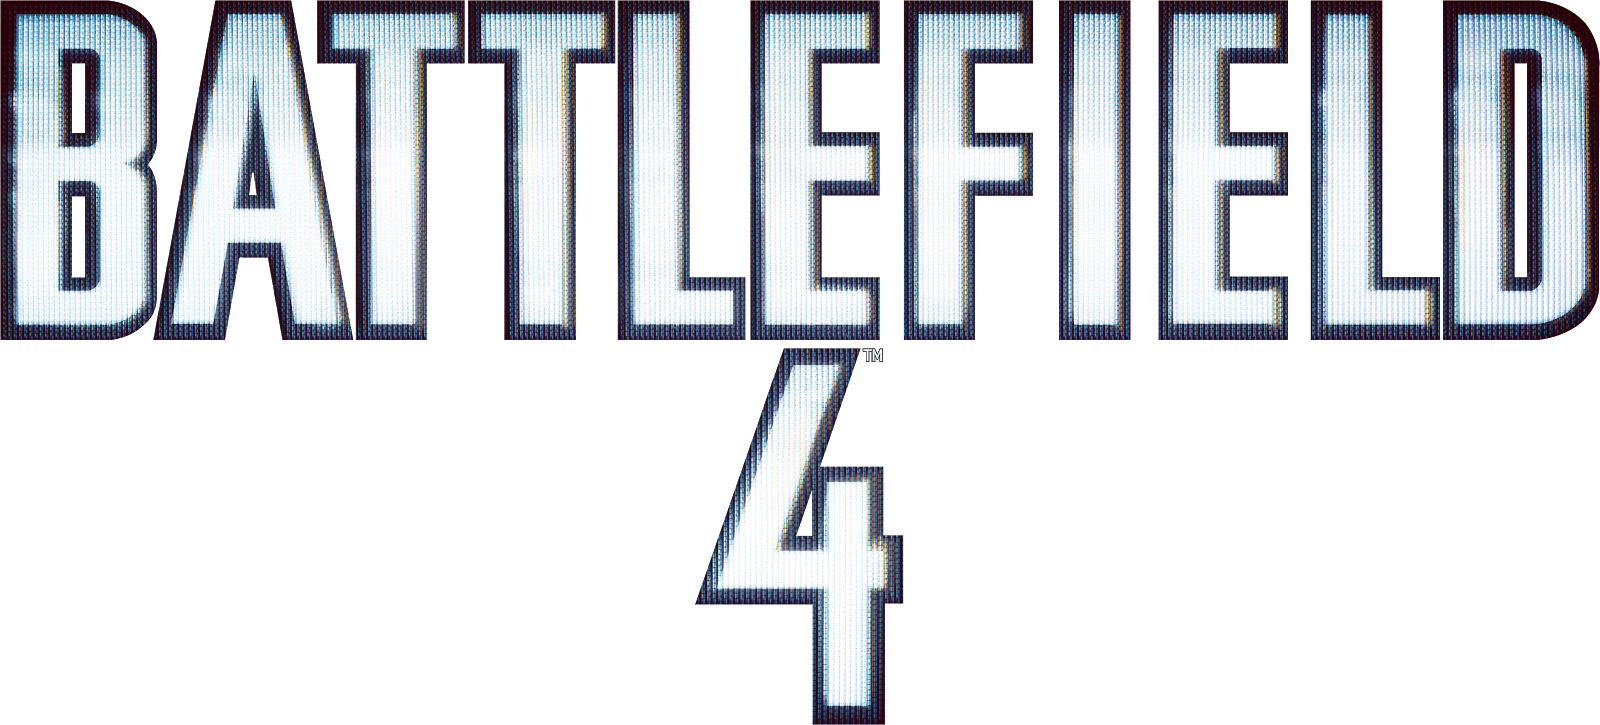 Battlefield 4 логотип. Надпись бателфилд. Названия игр на прозрачном фоне. Лого игр без фона.